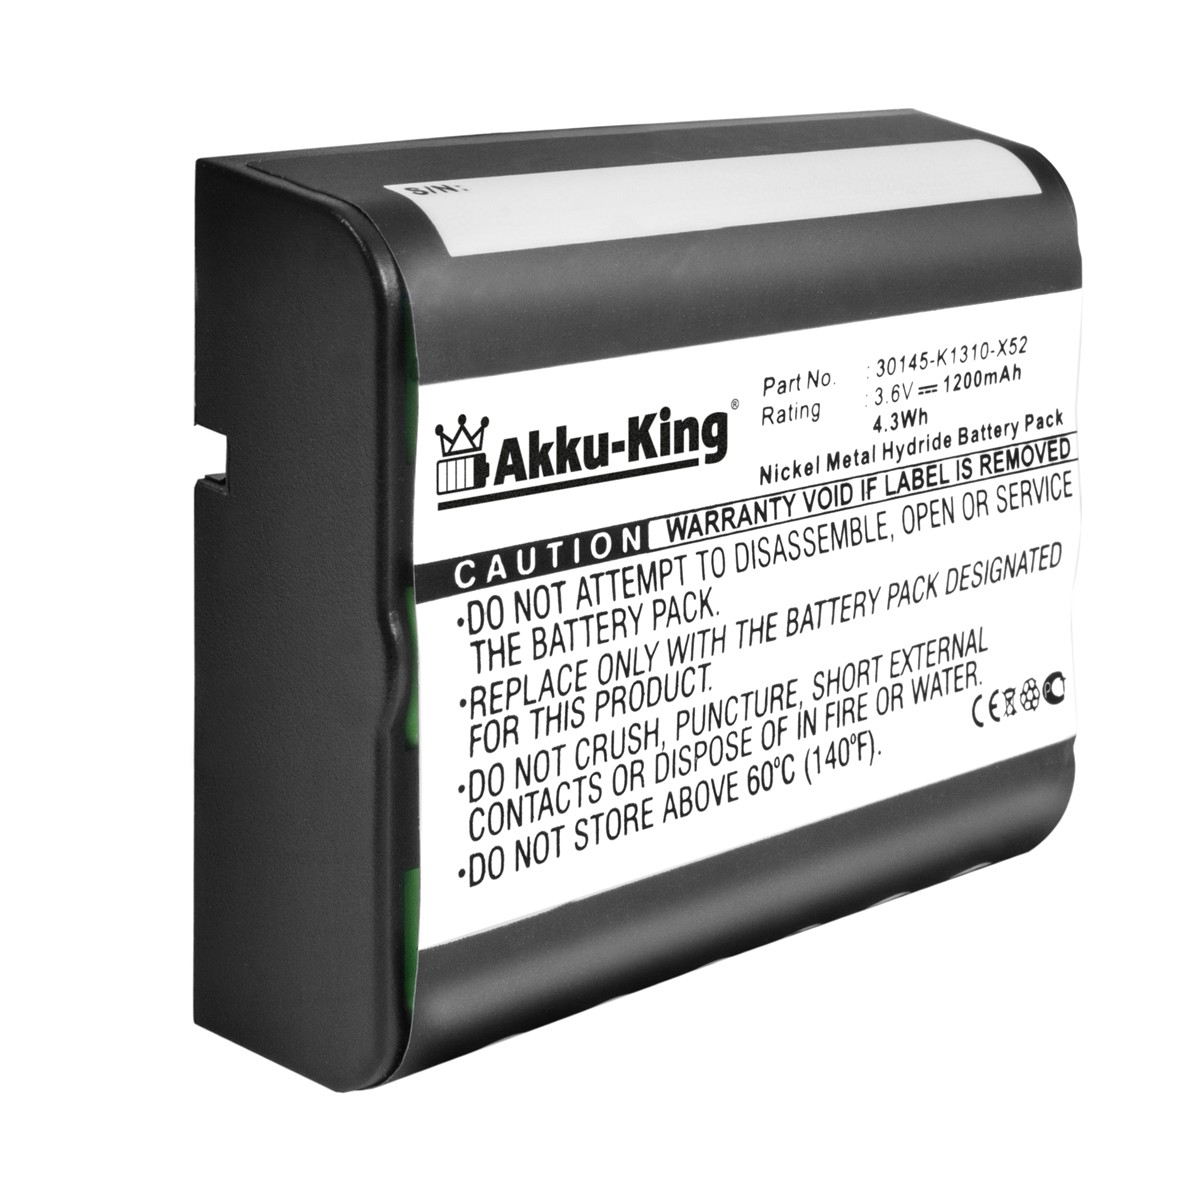 AKKU-KING Akku kompatibel mit 3.6 1200mAh Geräte-Akku, Siemens Ni-MH 30145-K1310-X52 Volt